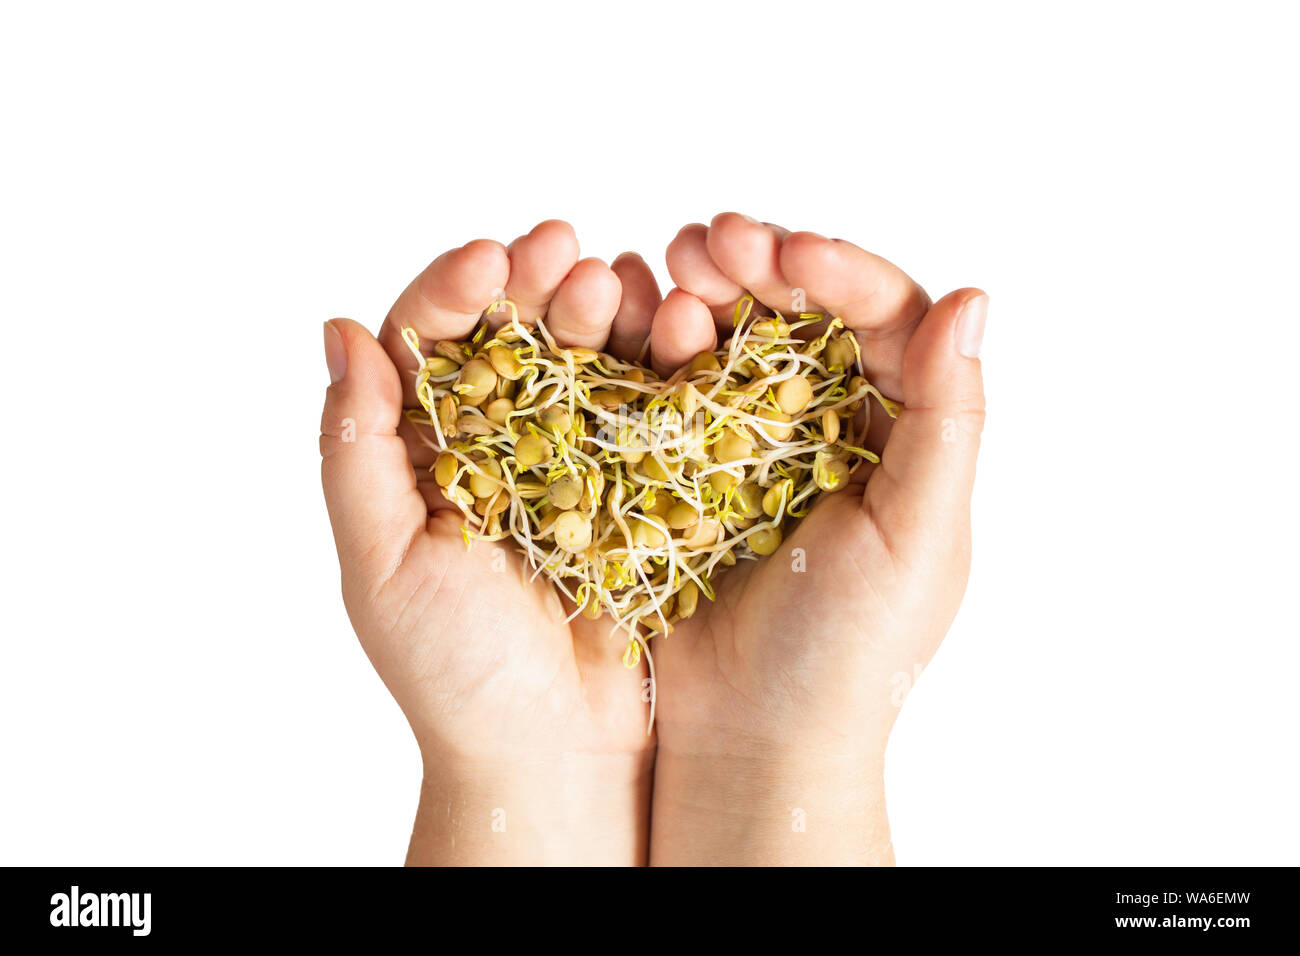 Weibliche Hände halten microgreen Linsen Sprossen in Herzform. Isolierte Bild auf weißem Hintergrund. Stockfoto